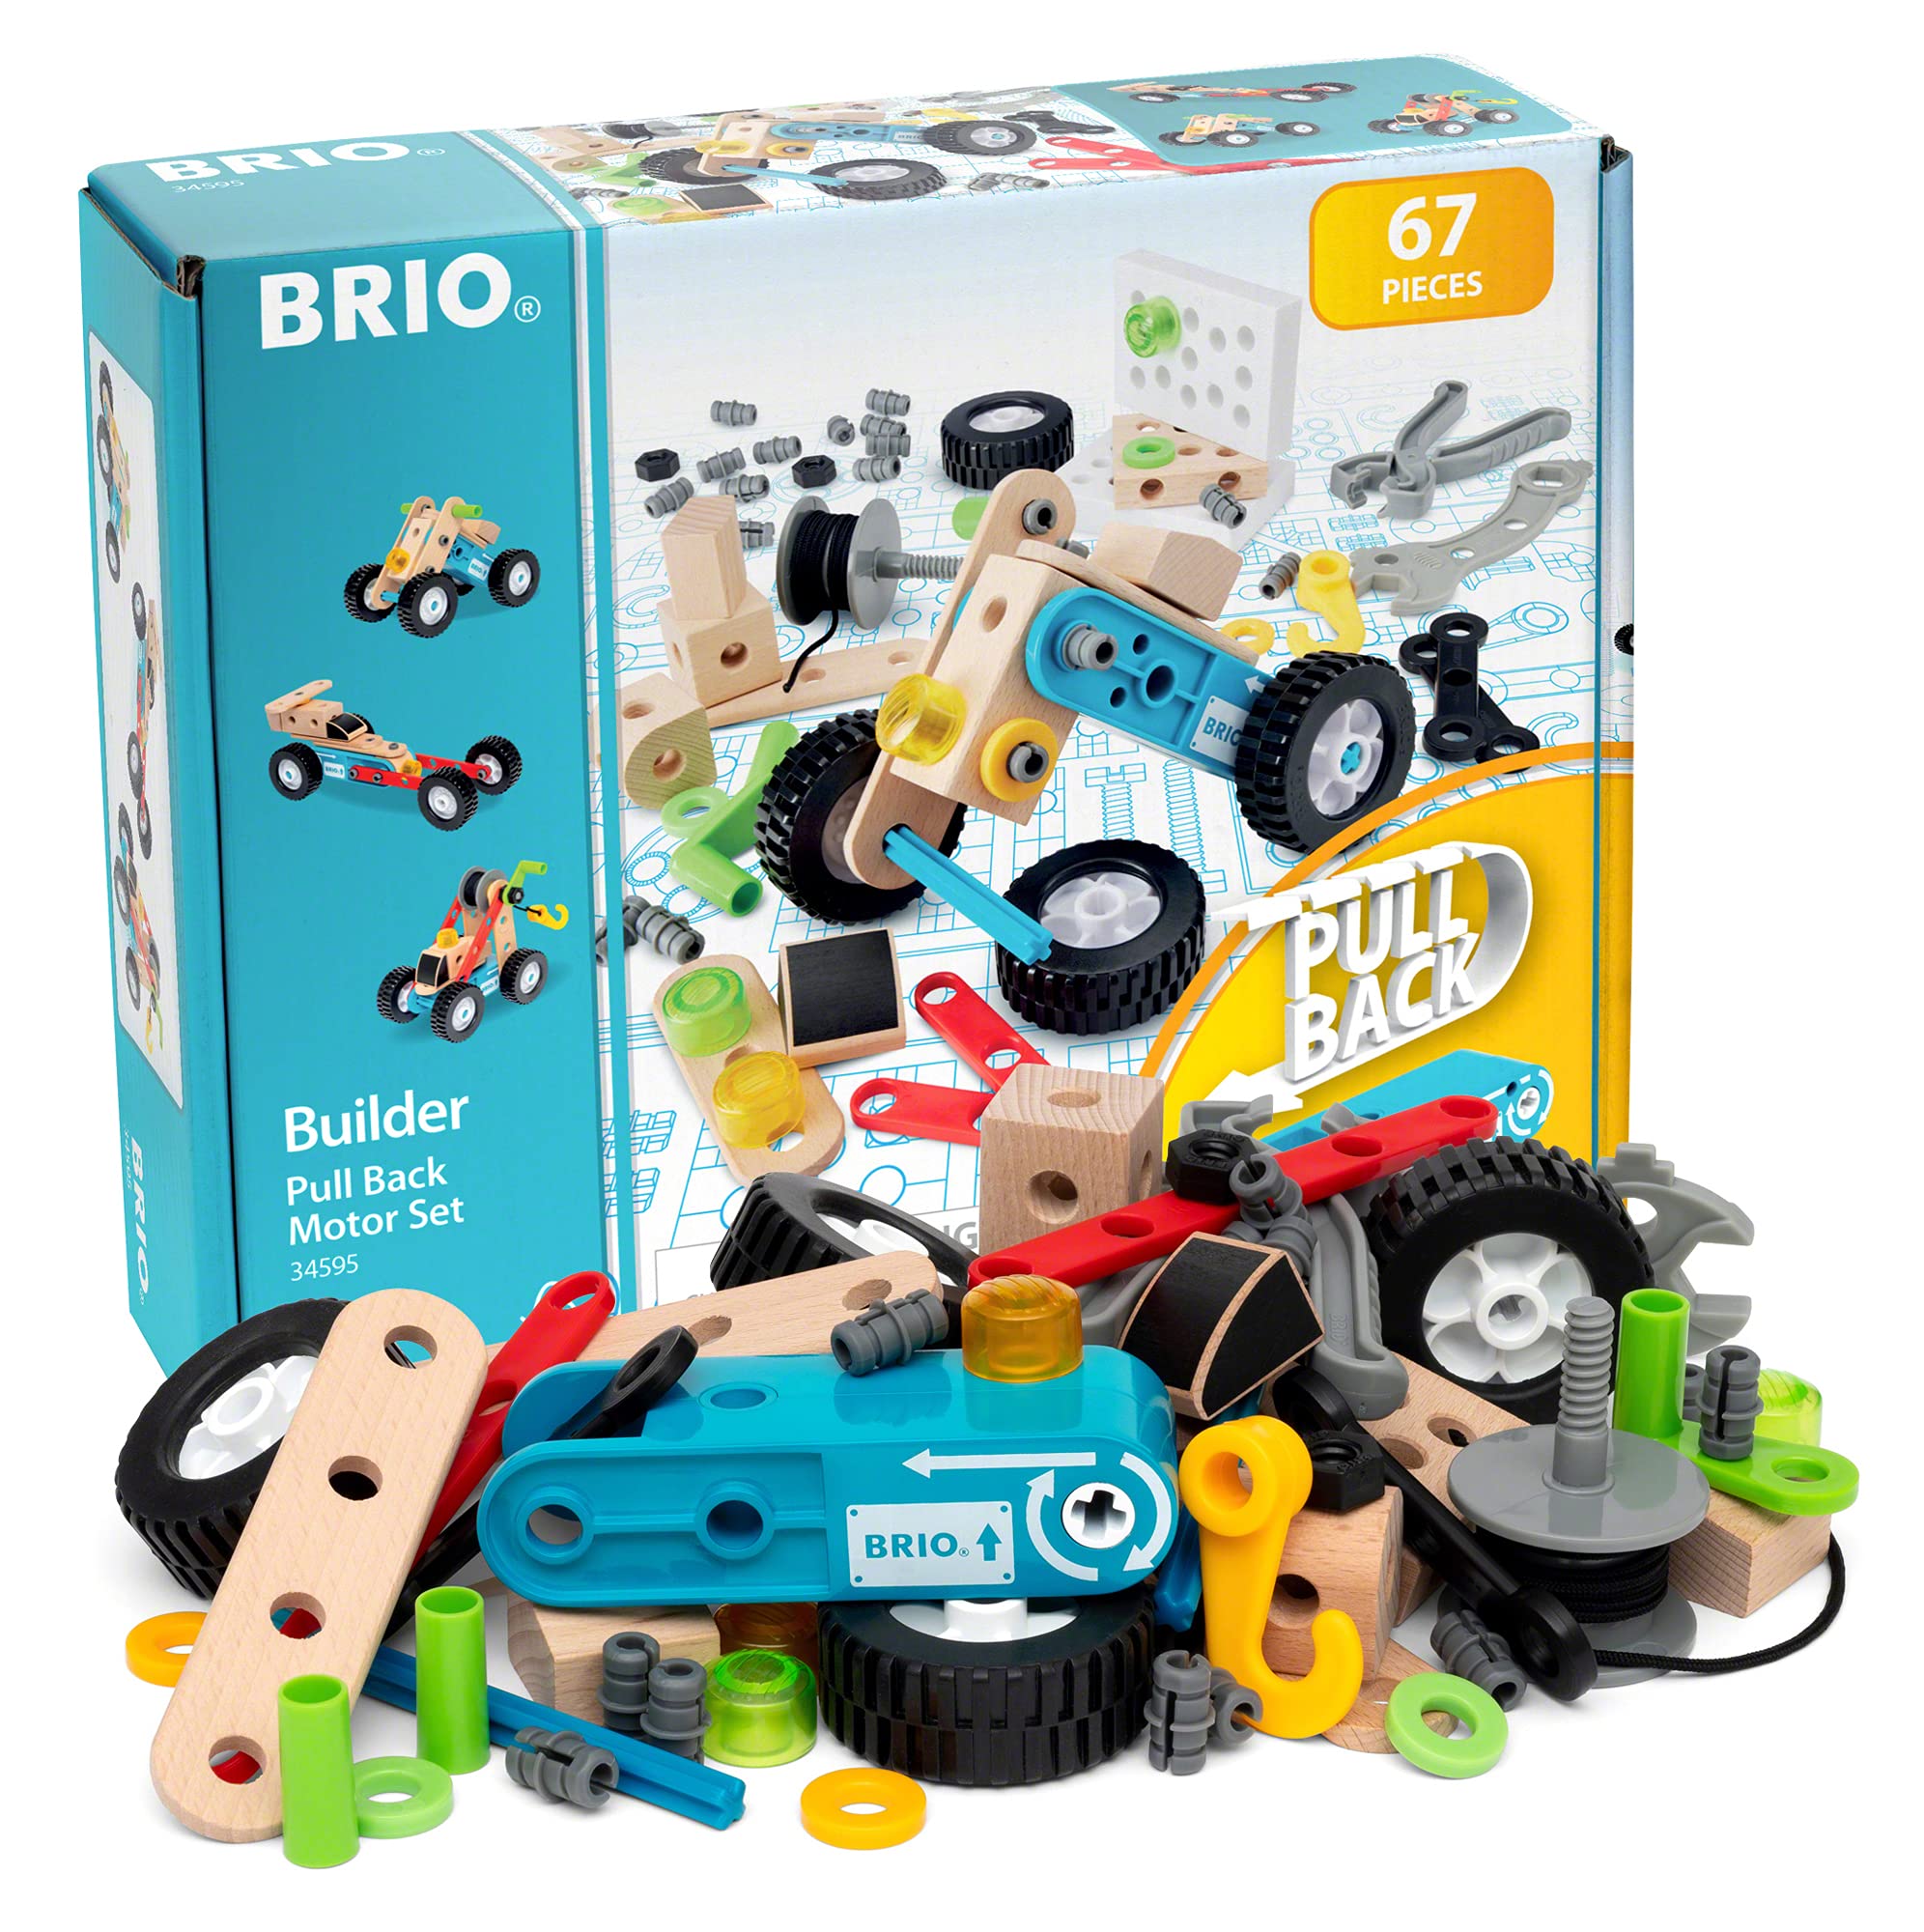 BRIO（ブリオ） ビルダー プルバックモーターセット 34595「全67ピース」対象年齢３歳〜（大工さん 工具遊び おもちゃ 知育玩具 ごっこ遊